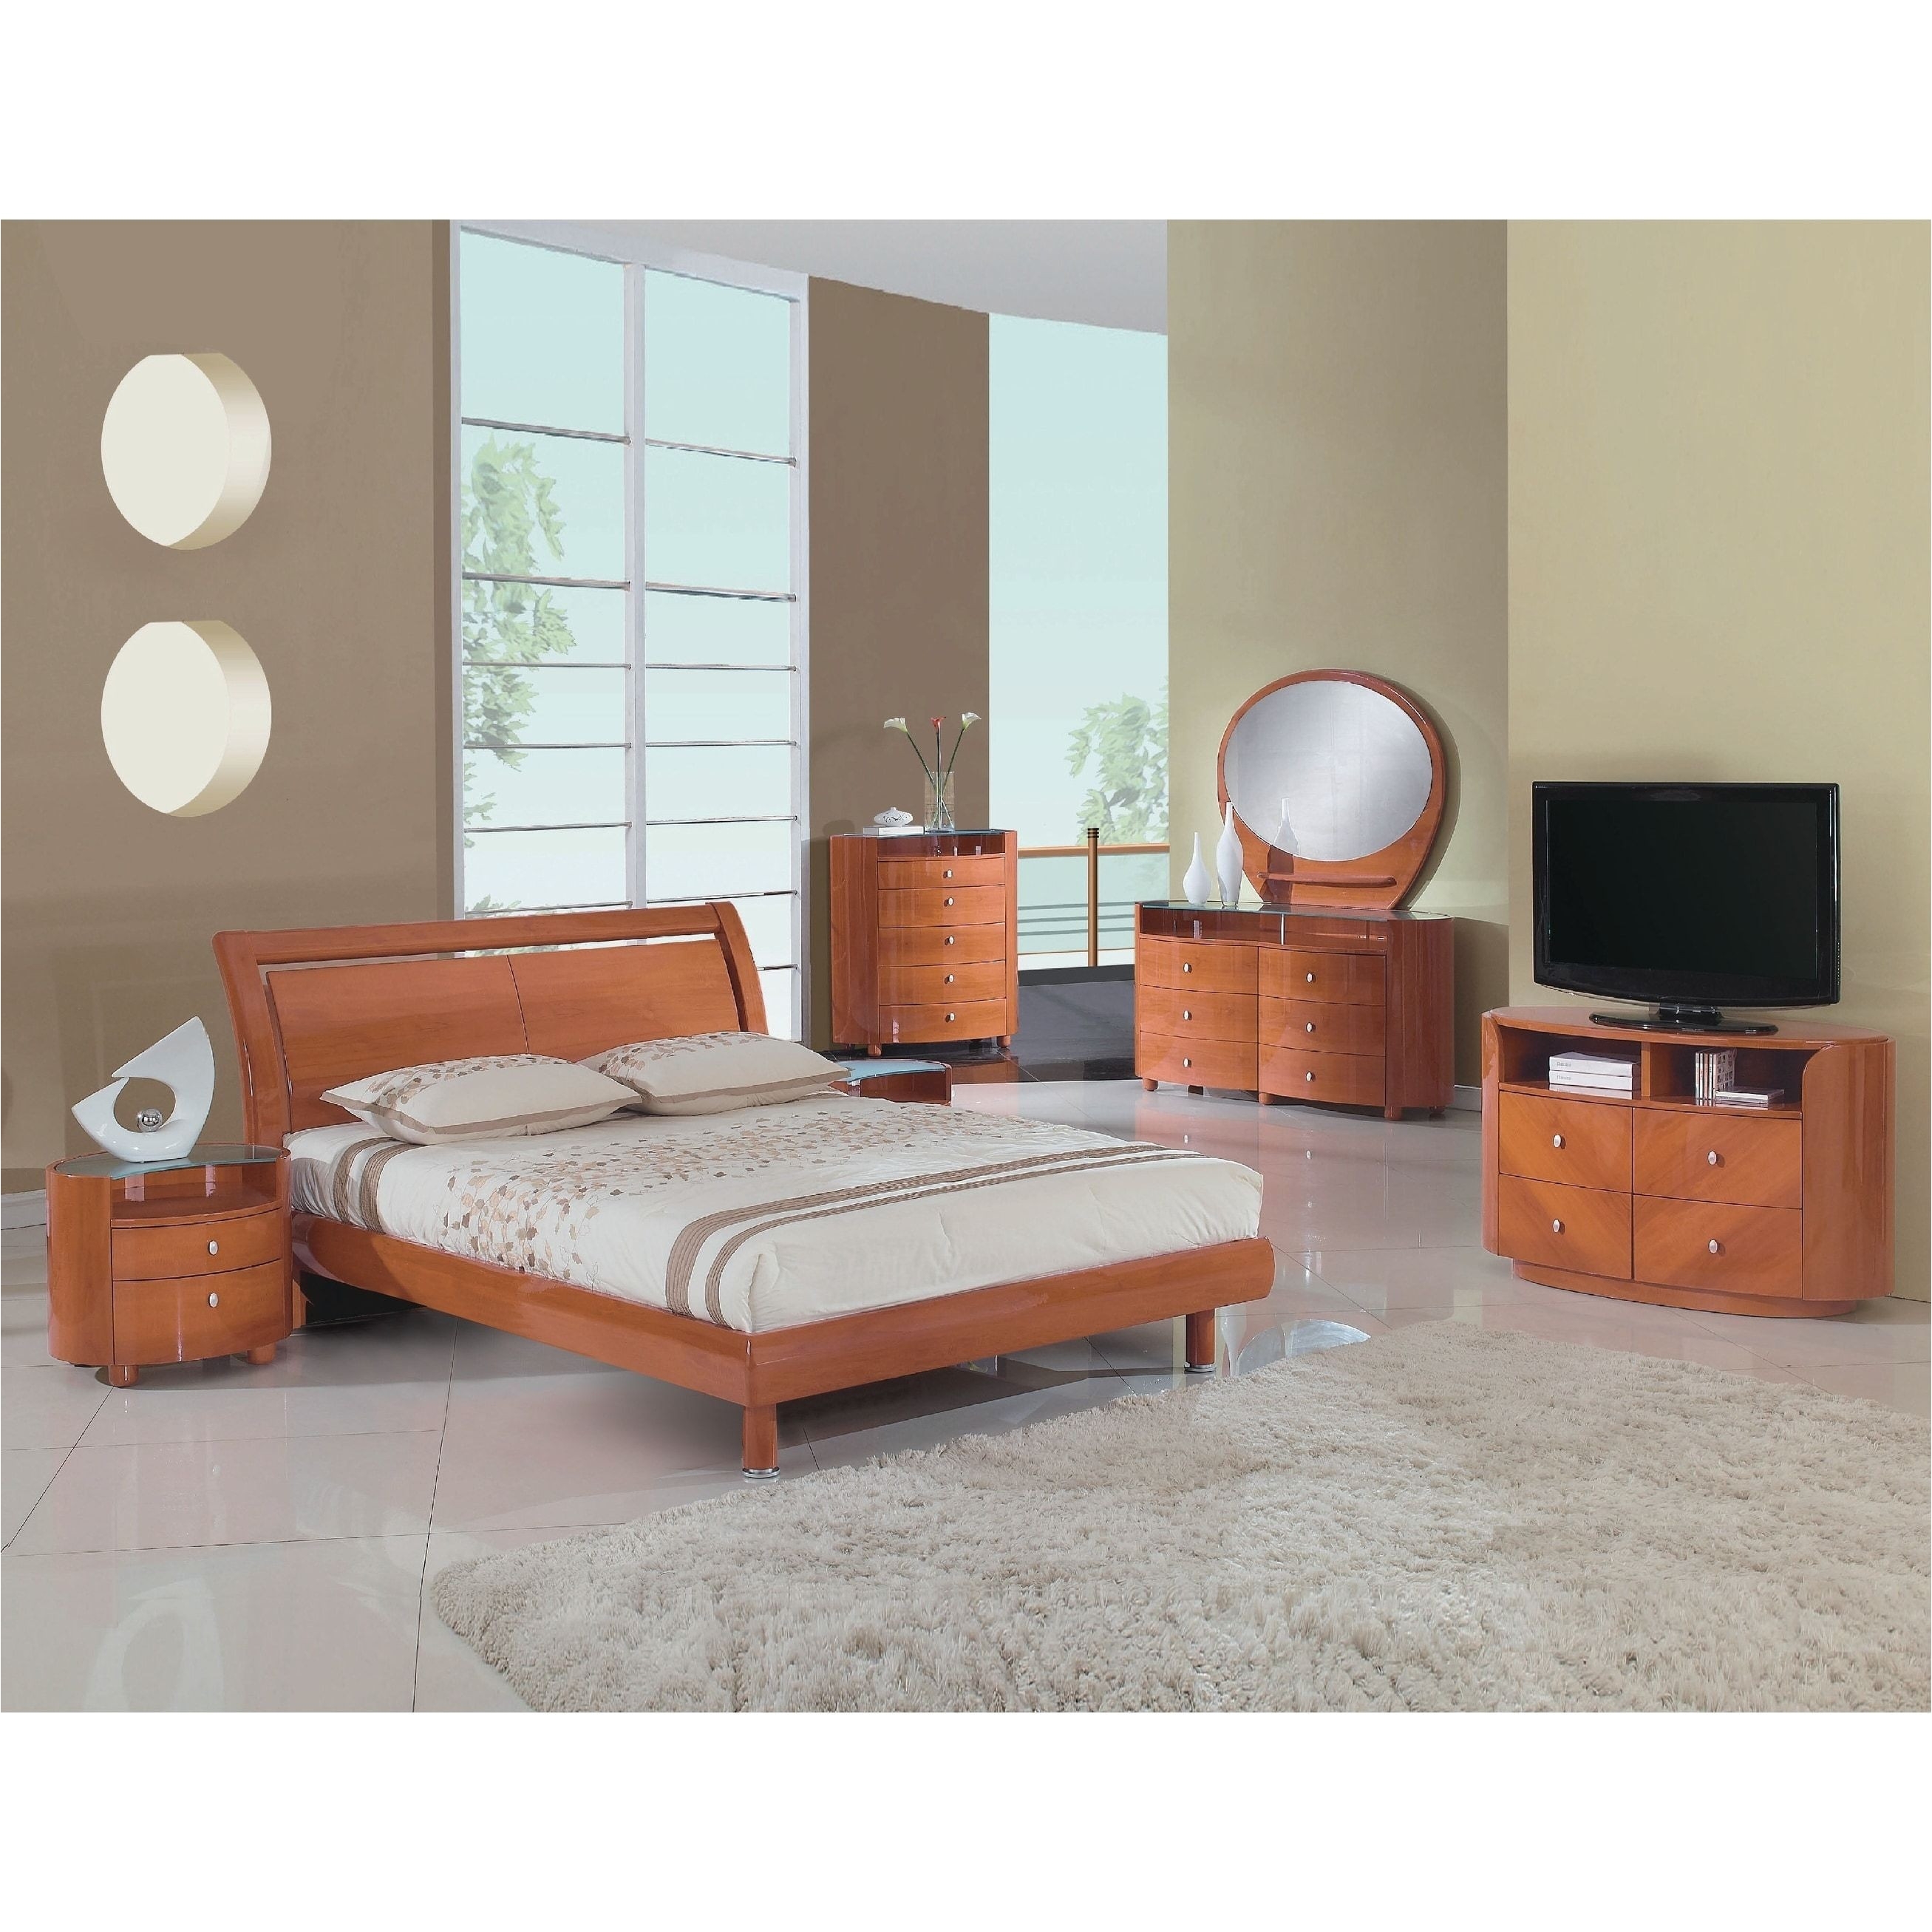 King Bedroom Sets Elegant King Bedroom Set Beautiful Brown Bedroom Set Best Vcf Furniture 0d